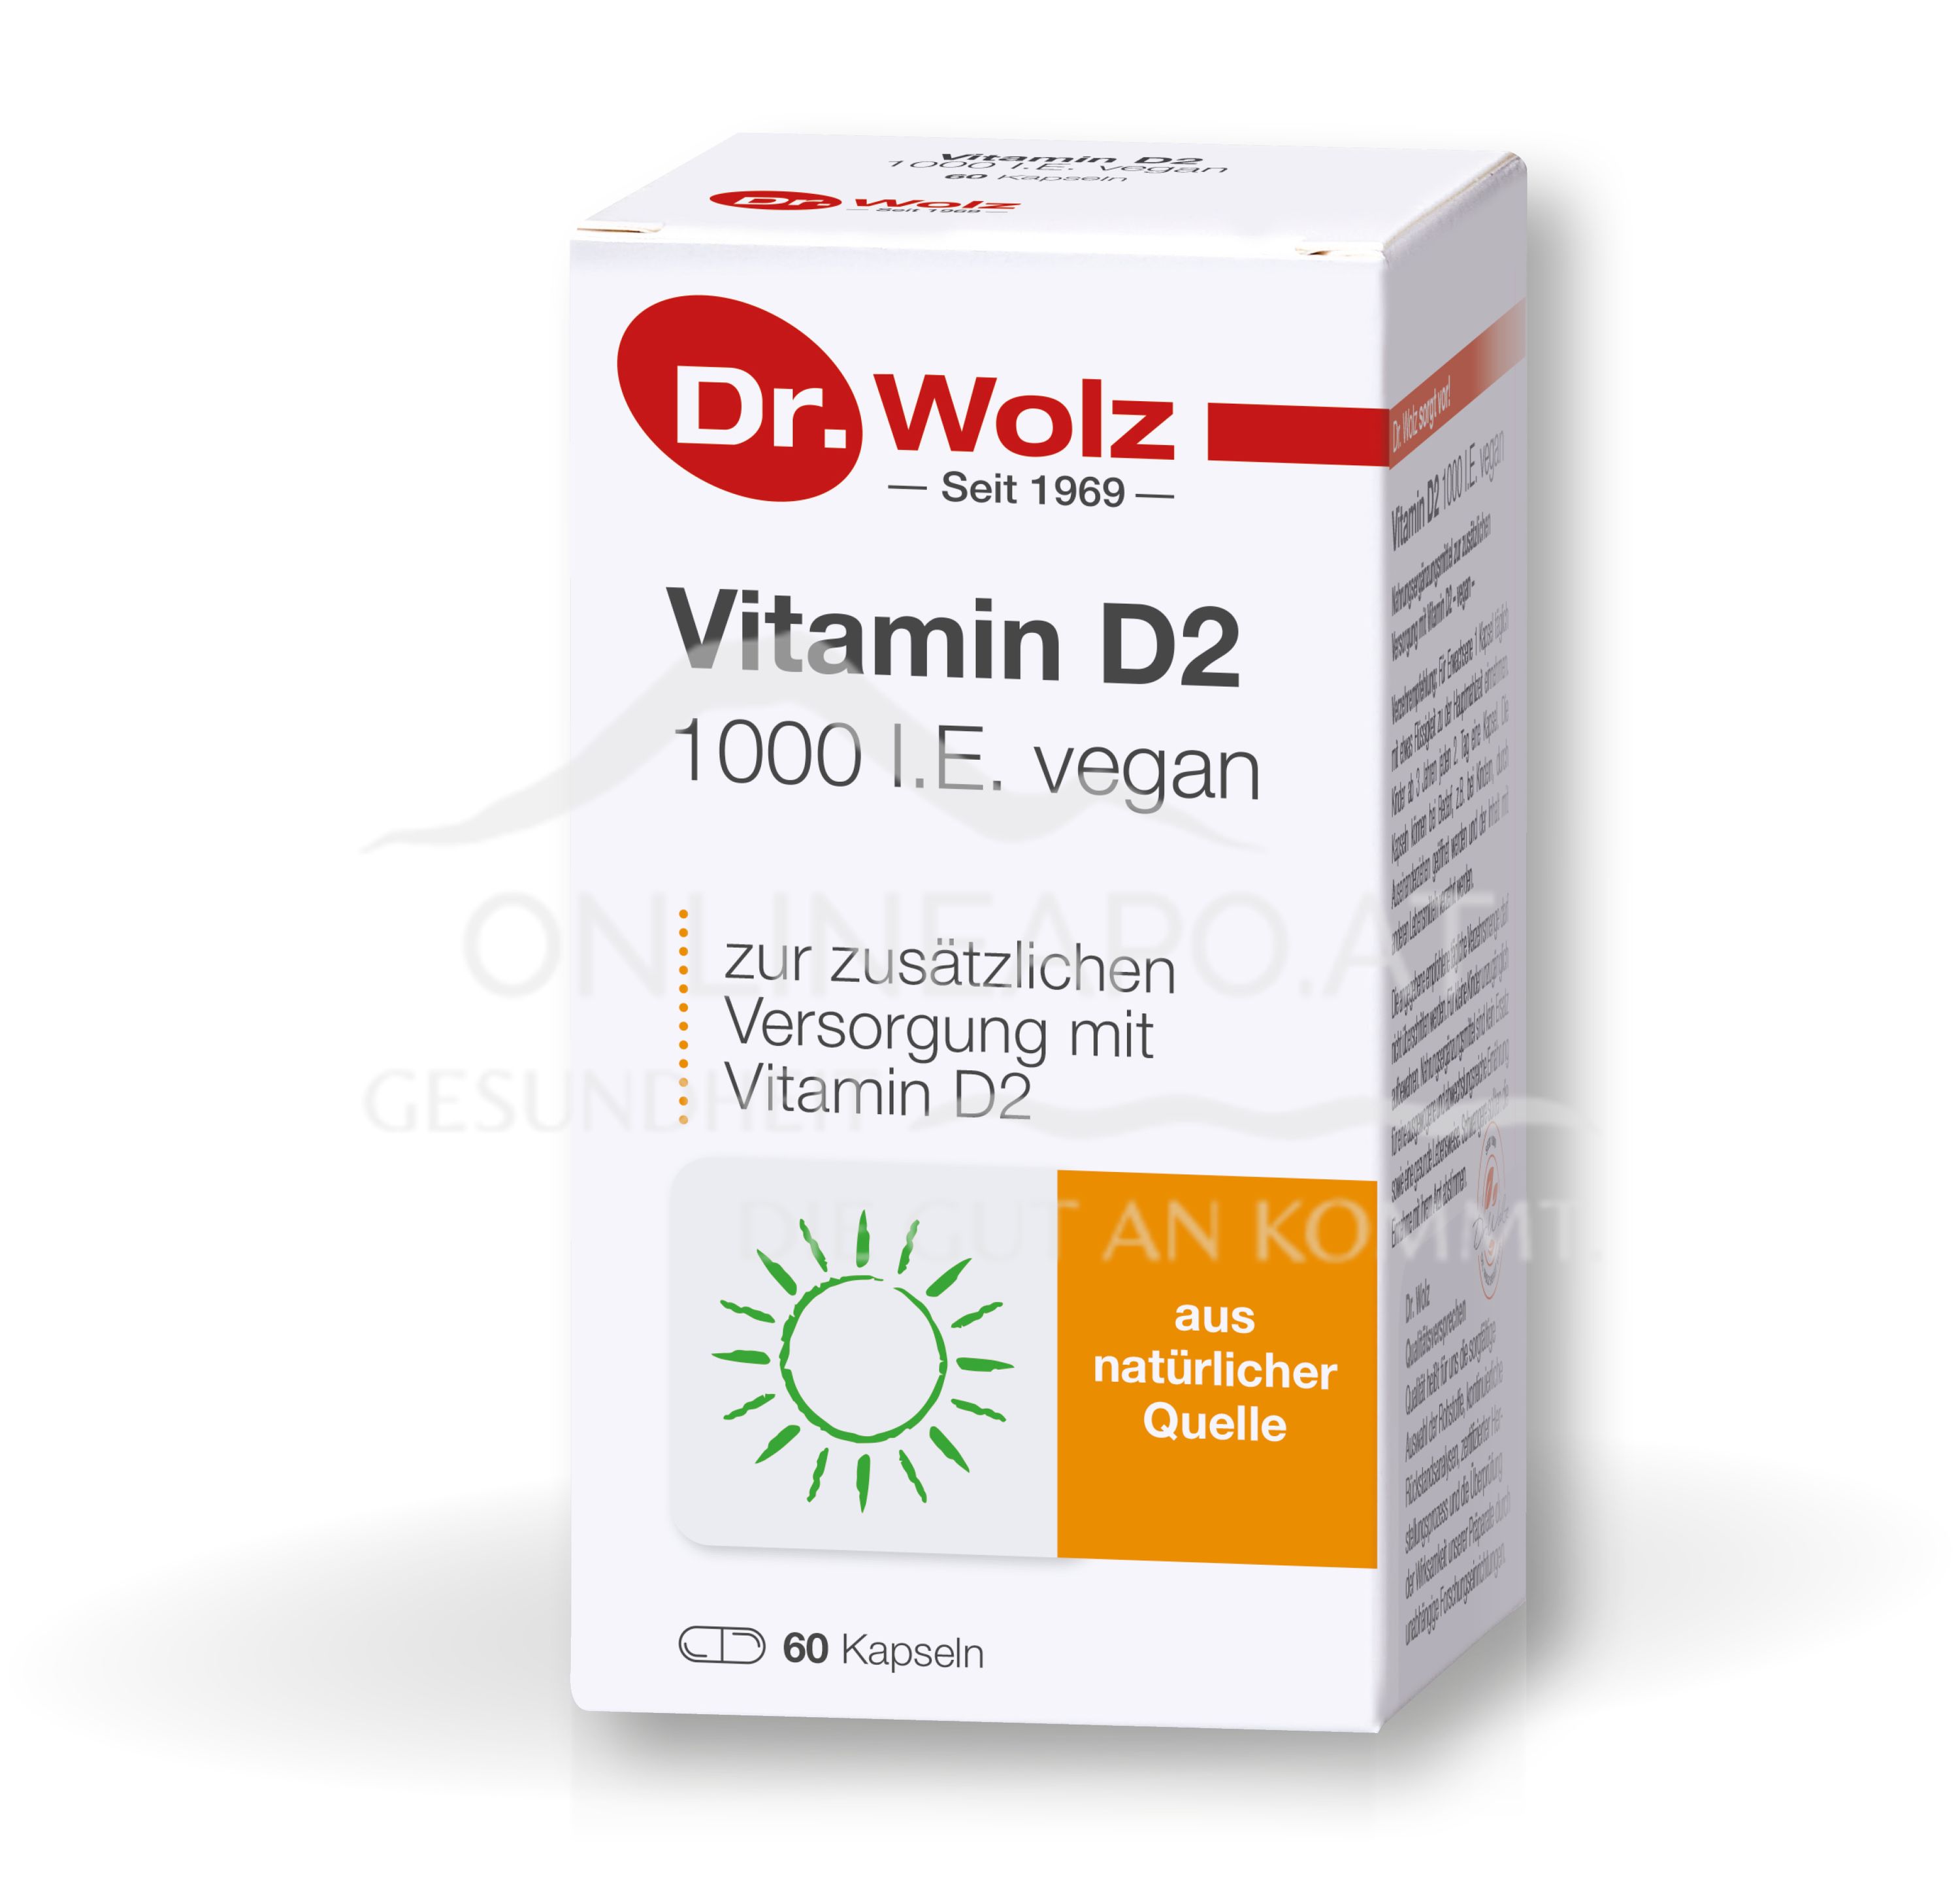 Dr. Wolz Vitamin D2 1000 I.E. vegan Kapseln